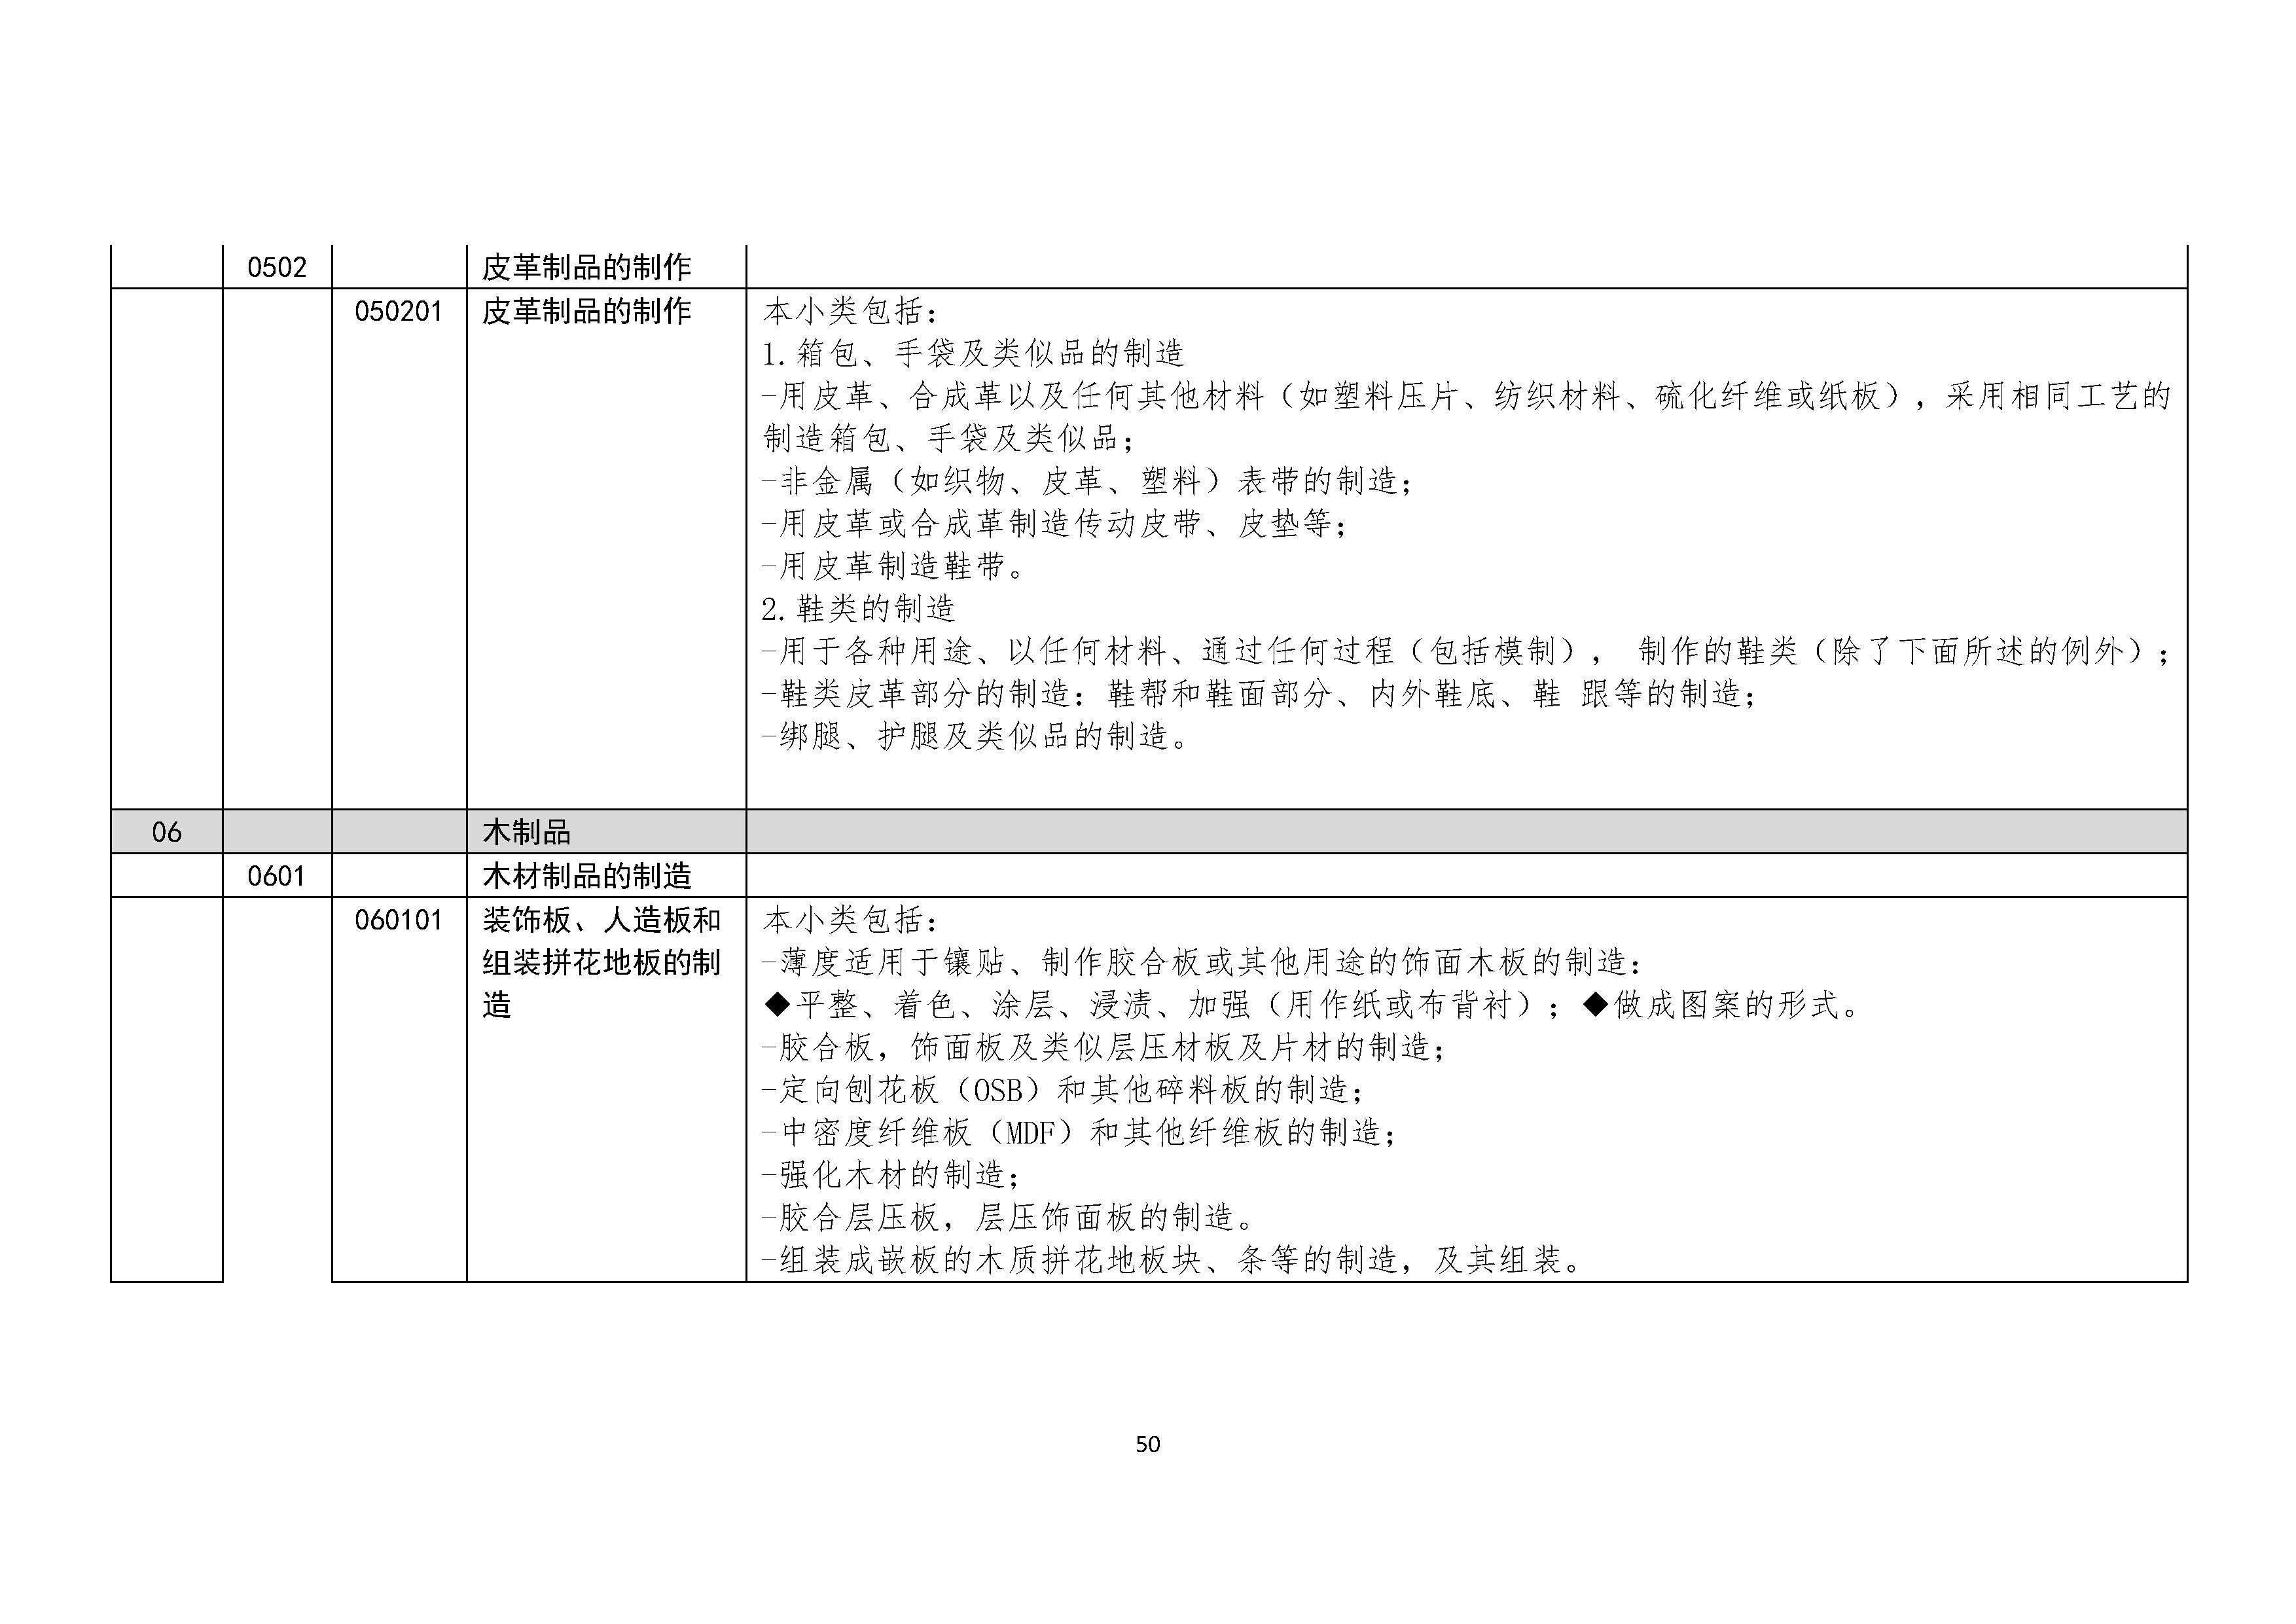 B.6《中国核能行业协会供应商评价供应商分类及产品专业范围划分规定》_页面_051.png